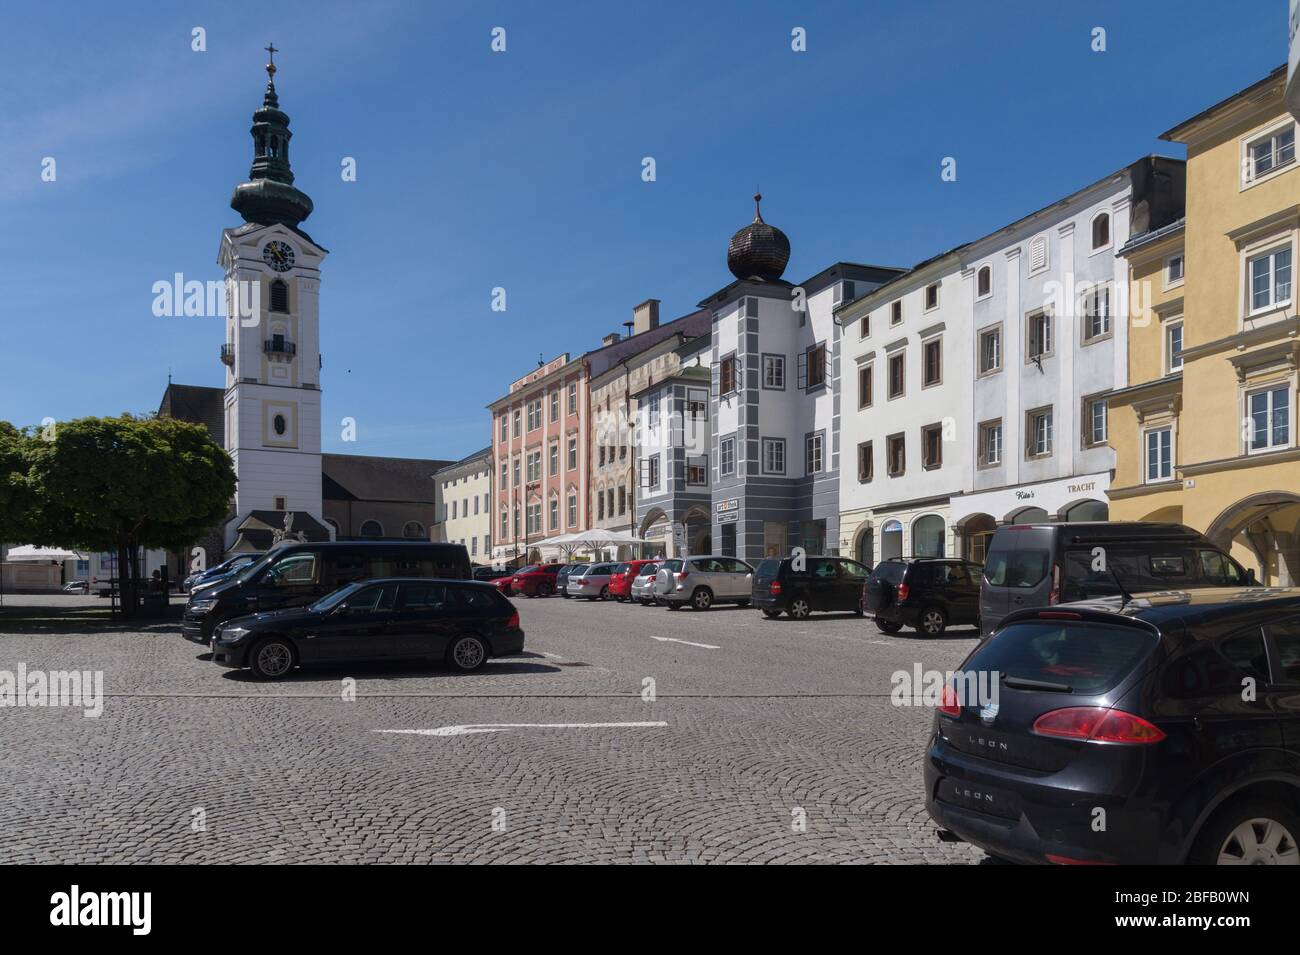 Freistadt, eine oberösterreichische Stadtgemeine mit ca. 8000 Einwohner im unteren Mühlviertel, Austria, Europa Stock Photo